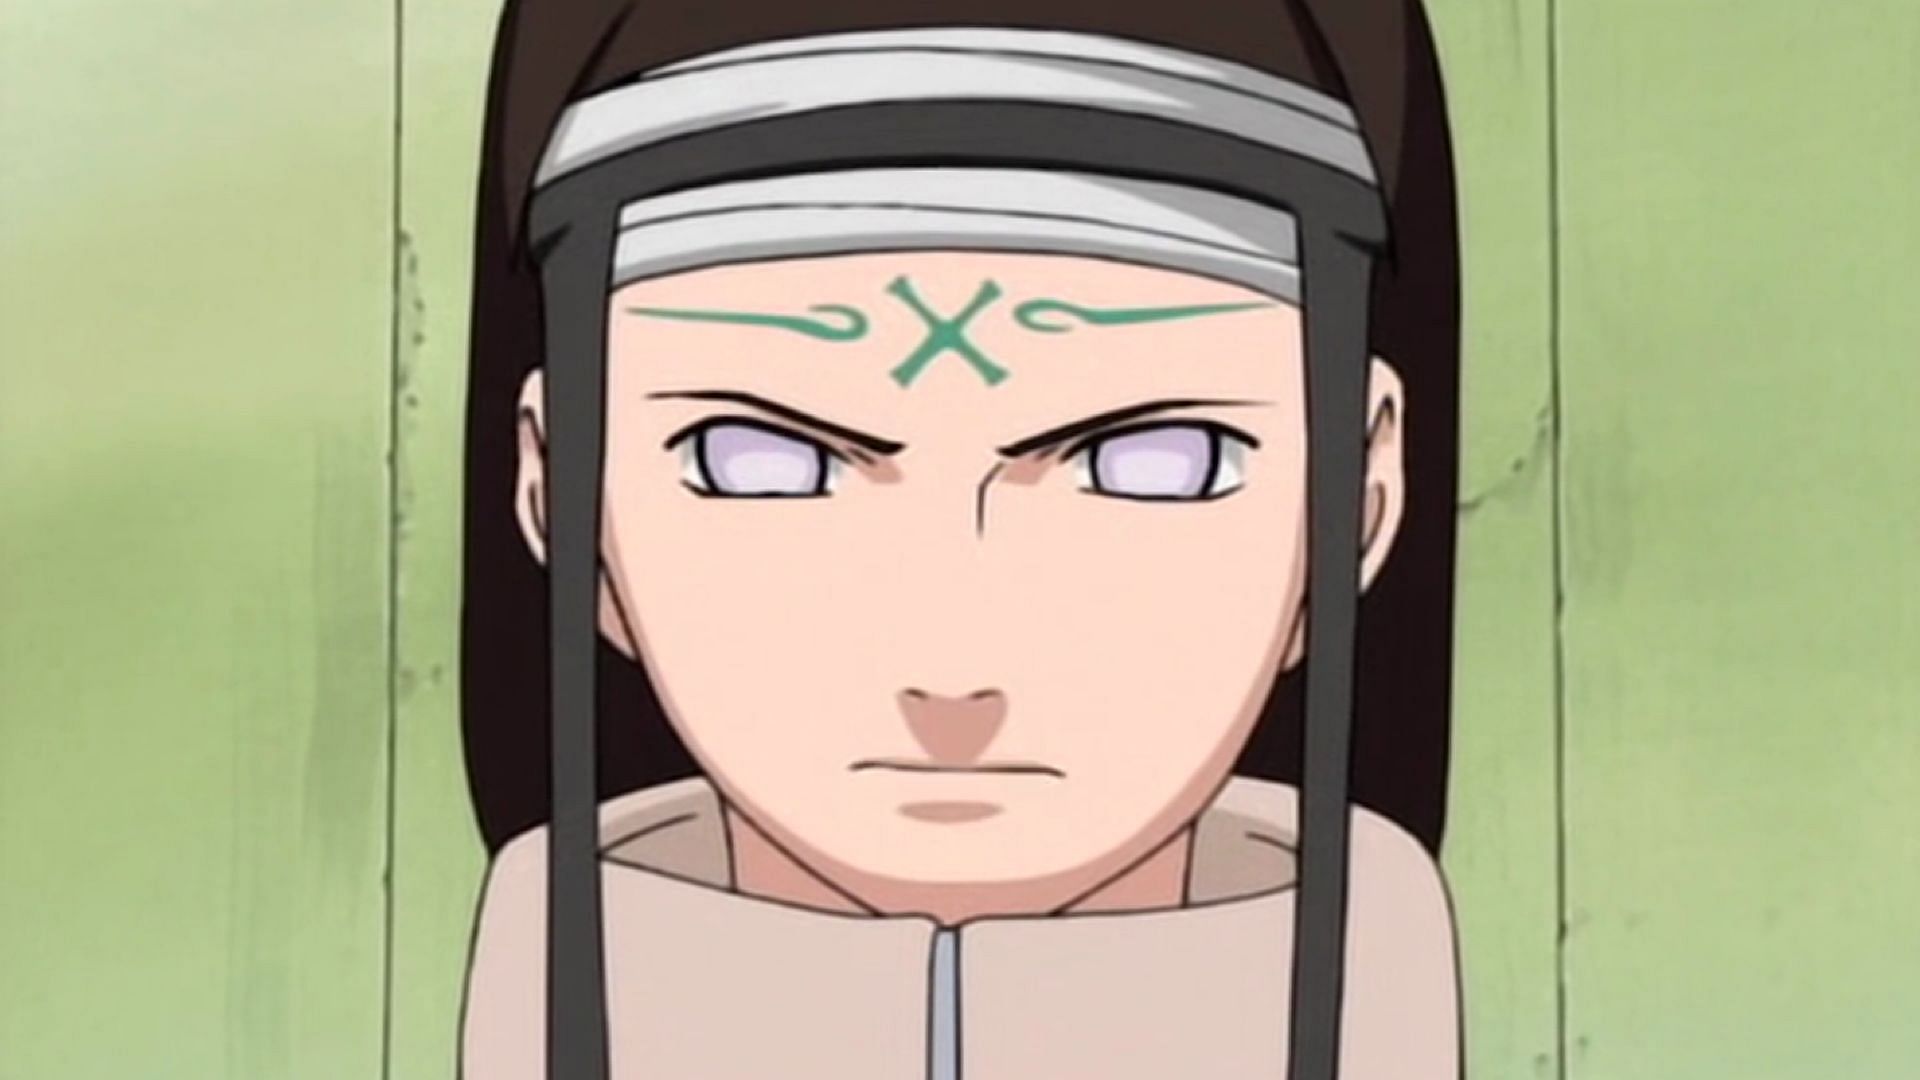 Neji Hyuga (Image via Naruto Anime)